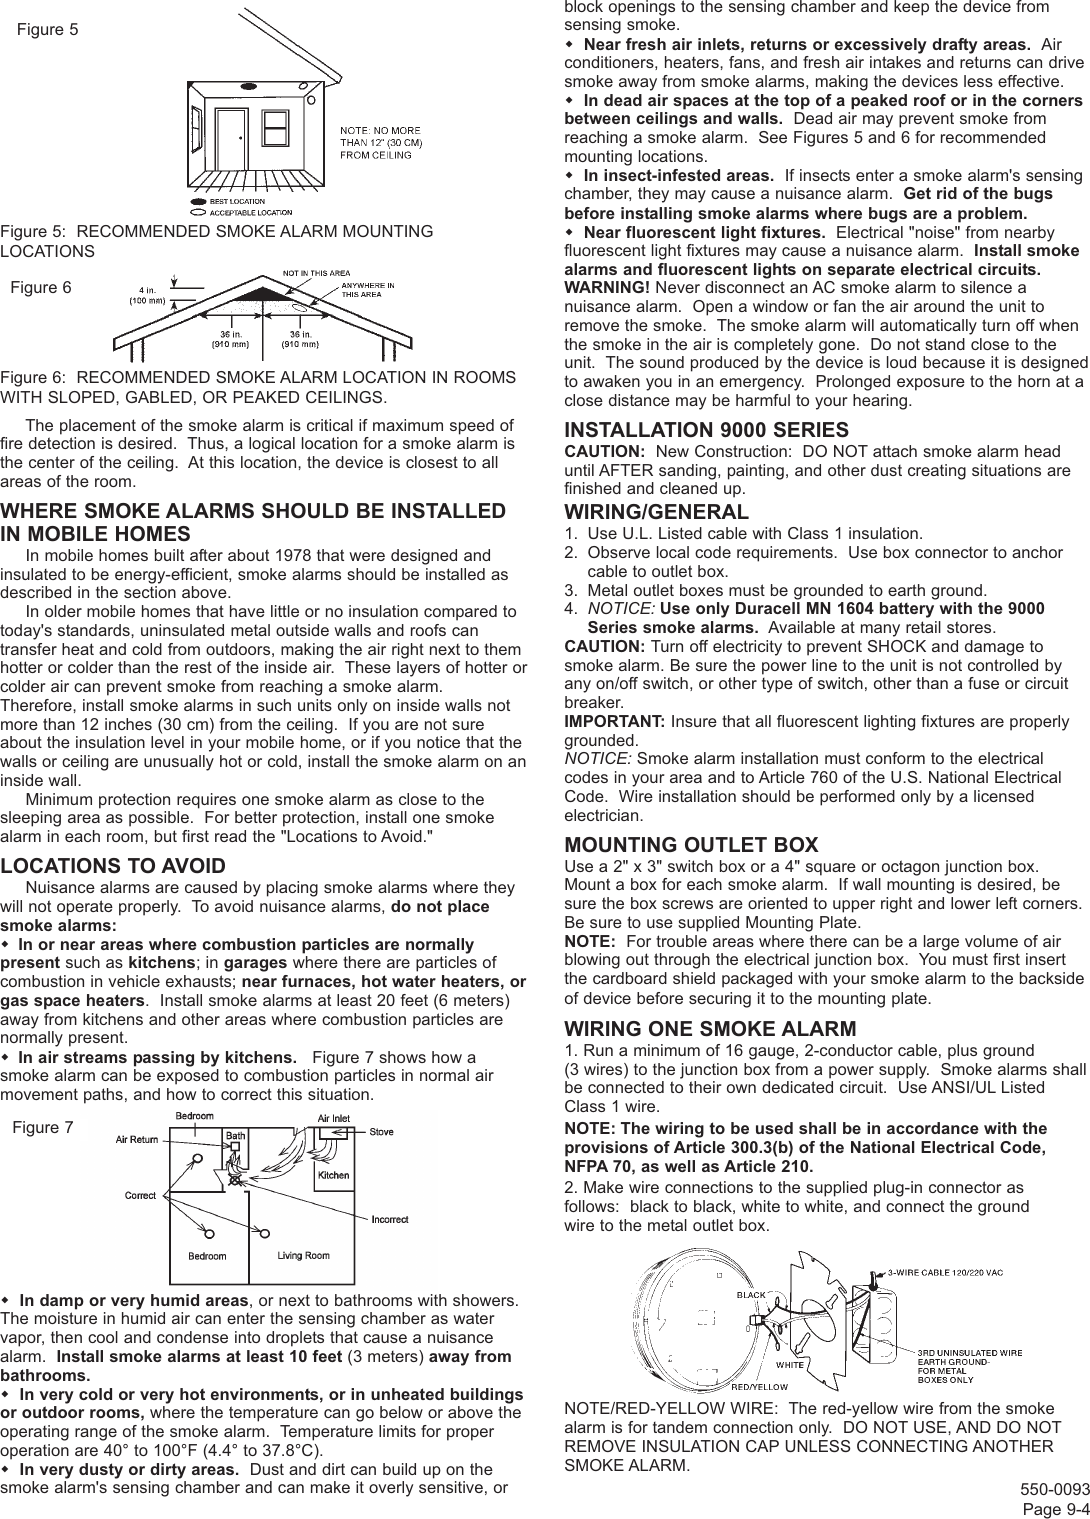 Page 4 of 6 - Gentek Gentek-9120-Users-Manual- (550-0093-17) 9120 Manual  Gentek-9120-users-manual